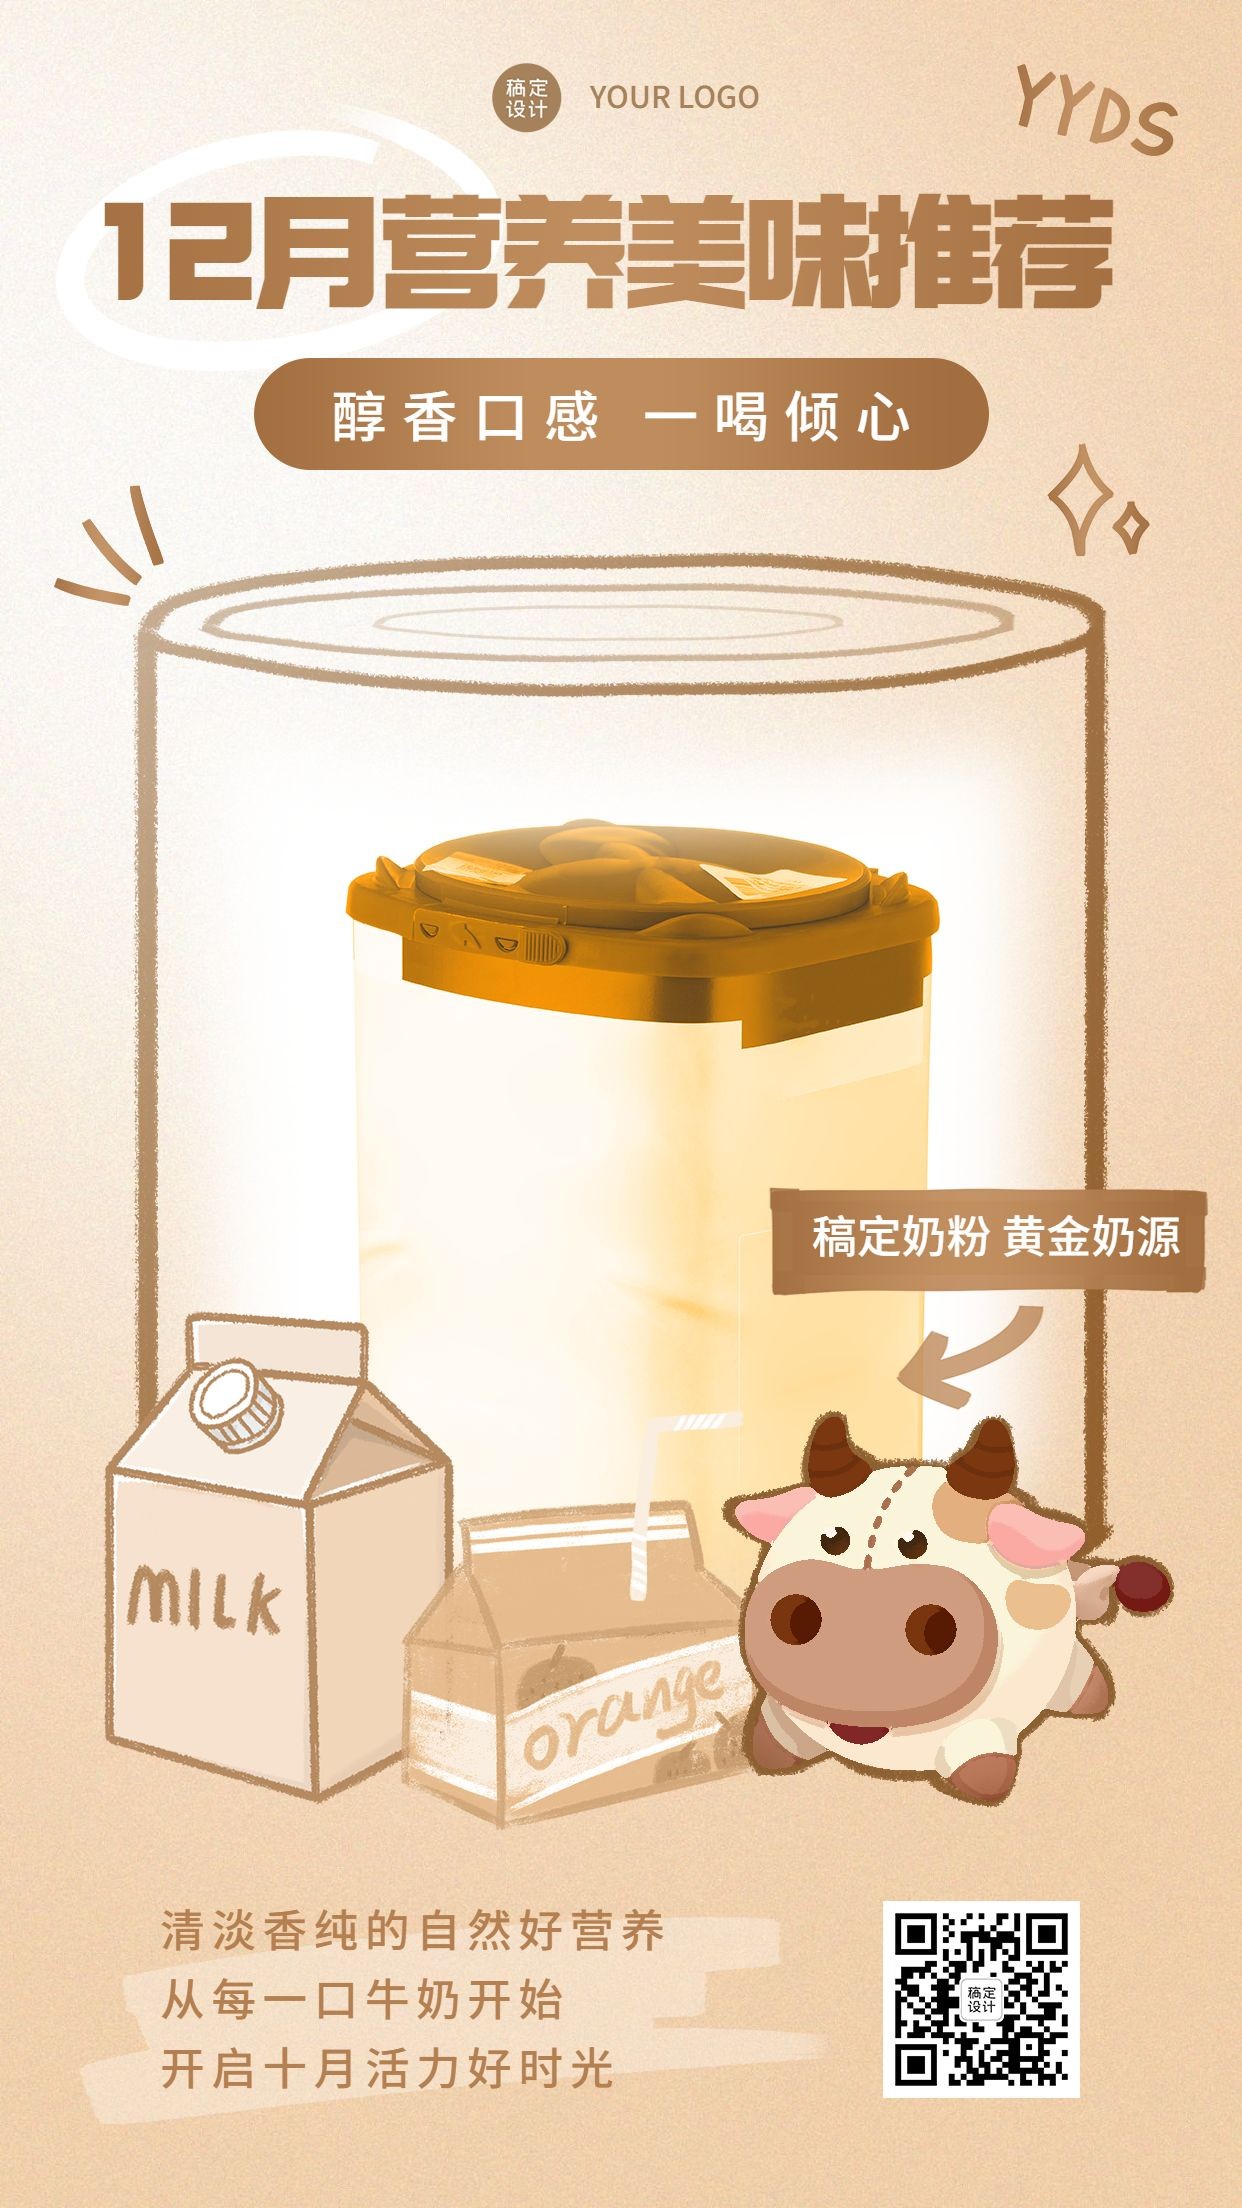 卡通手绘10月营销奶粉产品功效介绍